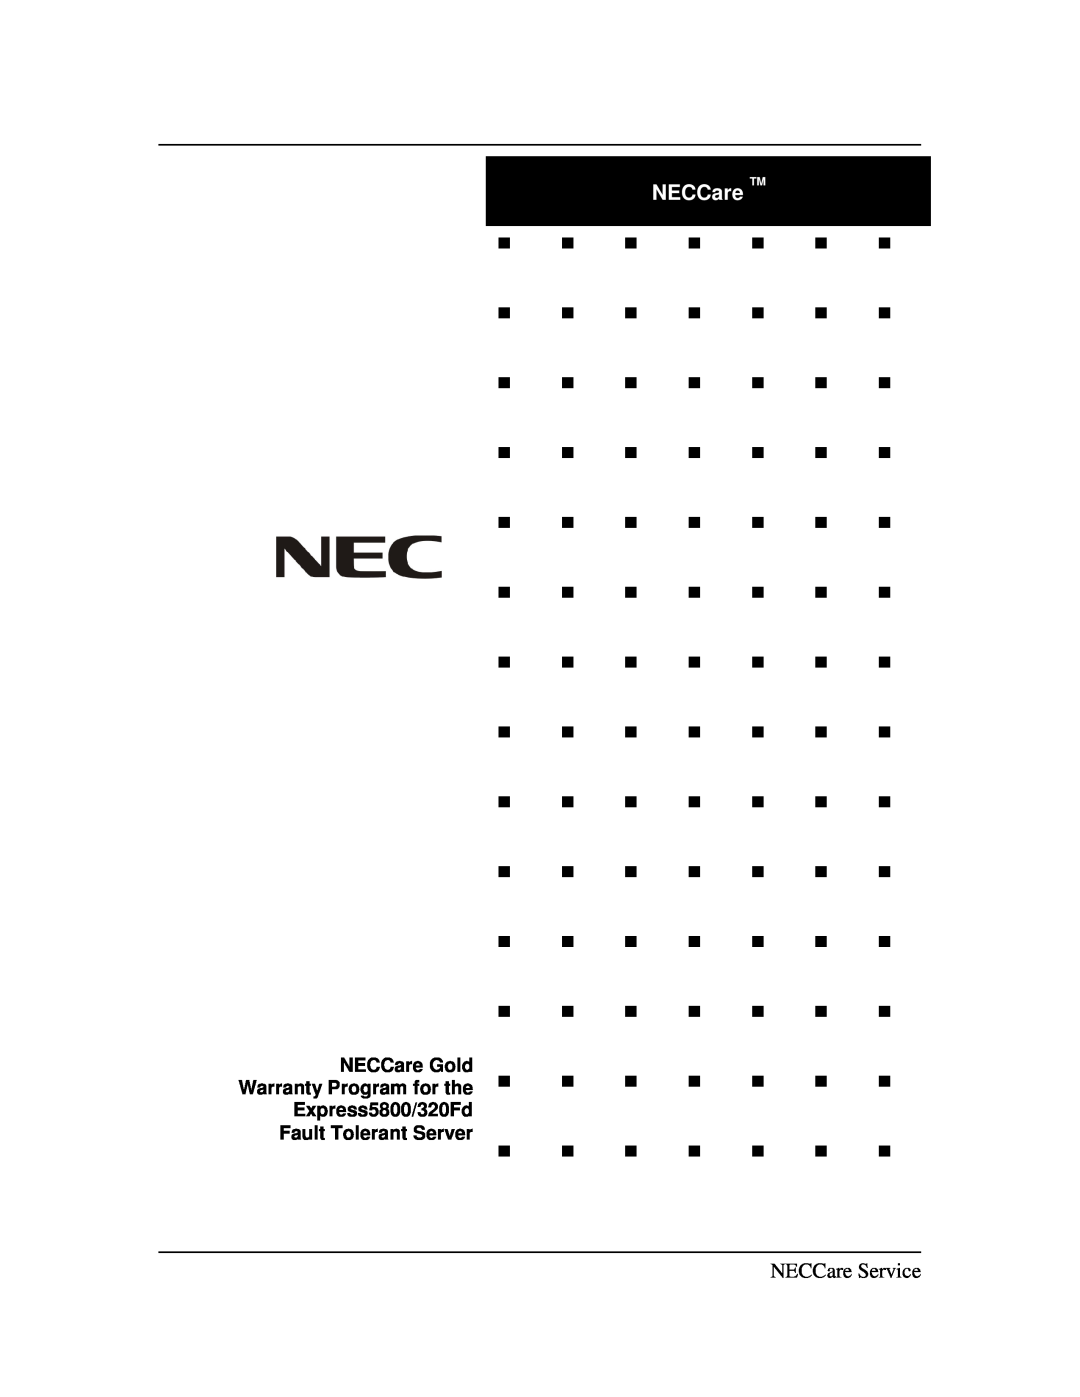 NEC 320Fd warranty NECCare TM, NECCare Service 